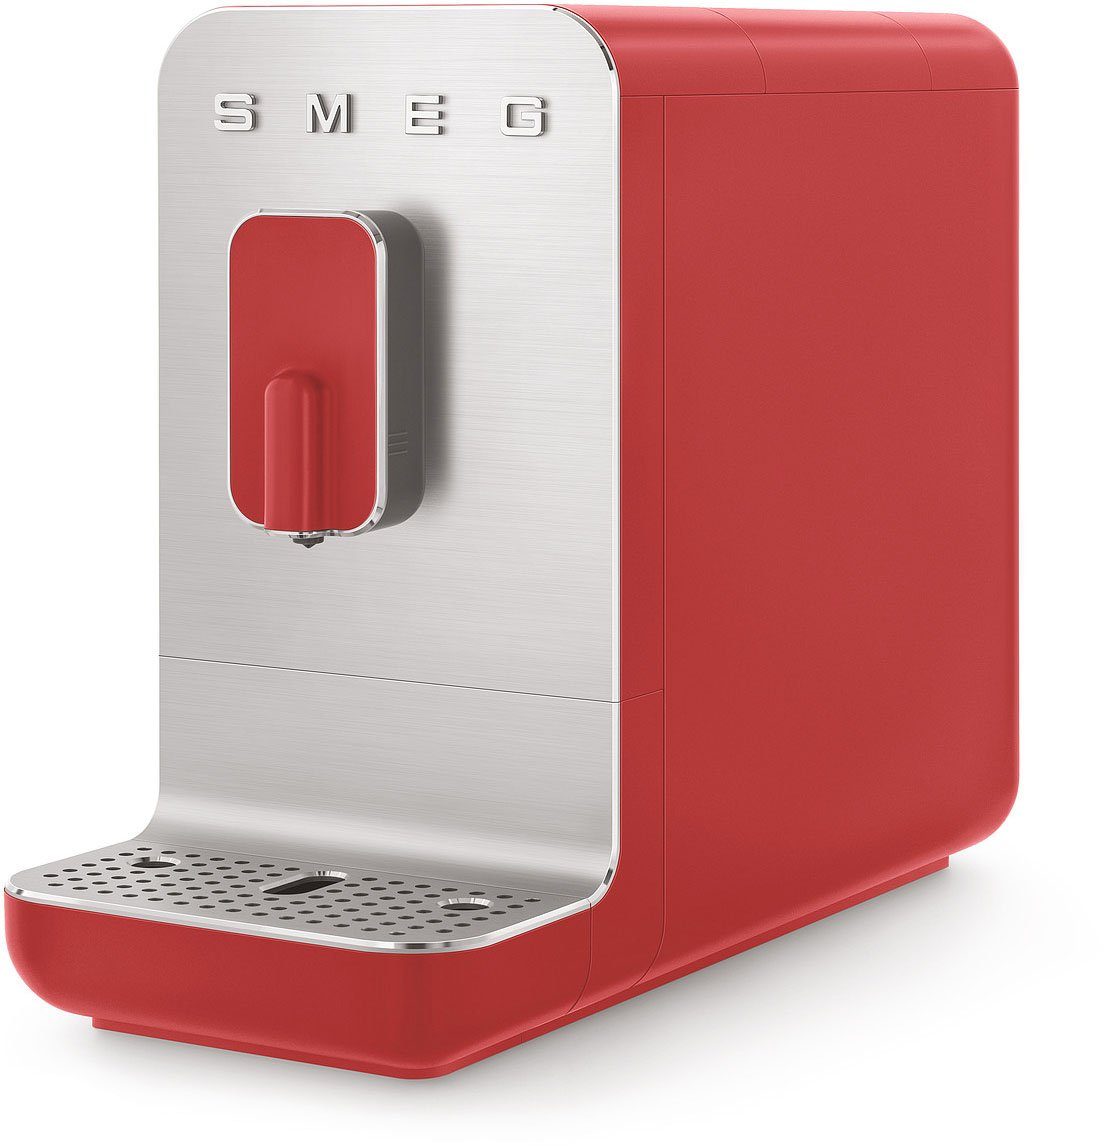 Kaffeevollautomat Rot BCC01RDMEU, Brüheinheit matt Smeg BCC01RDMEU Herausnehmbare